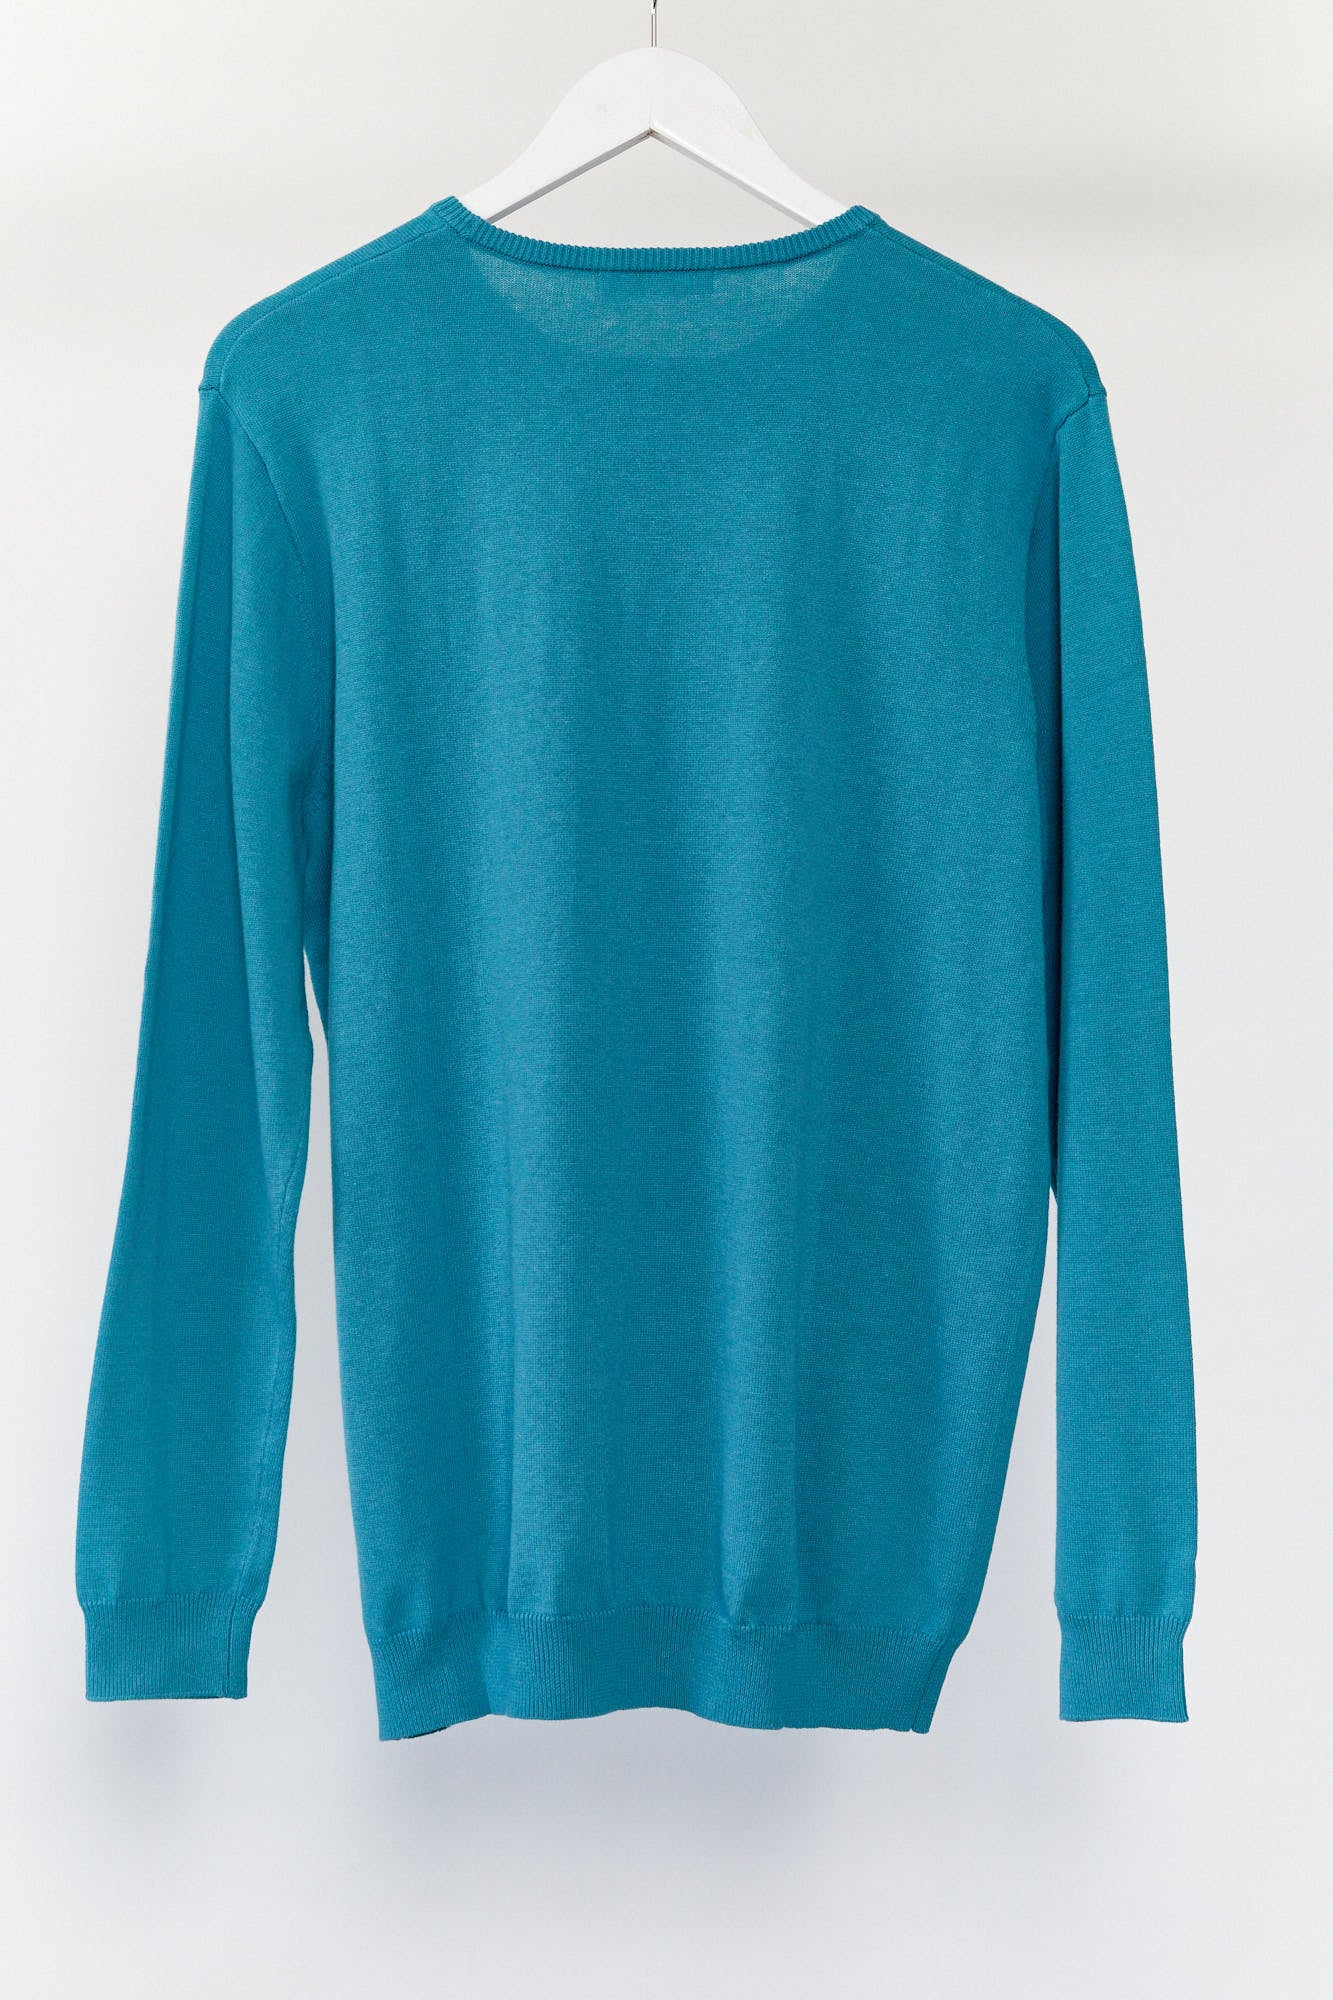 Mens WoolOvers green blue jumper size medium